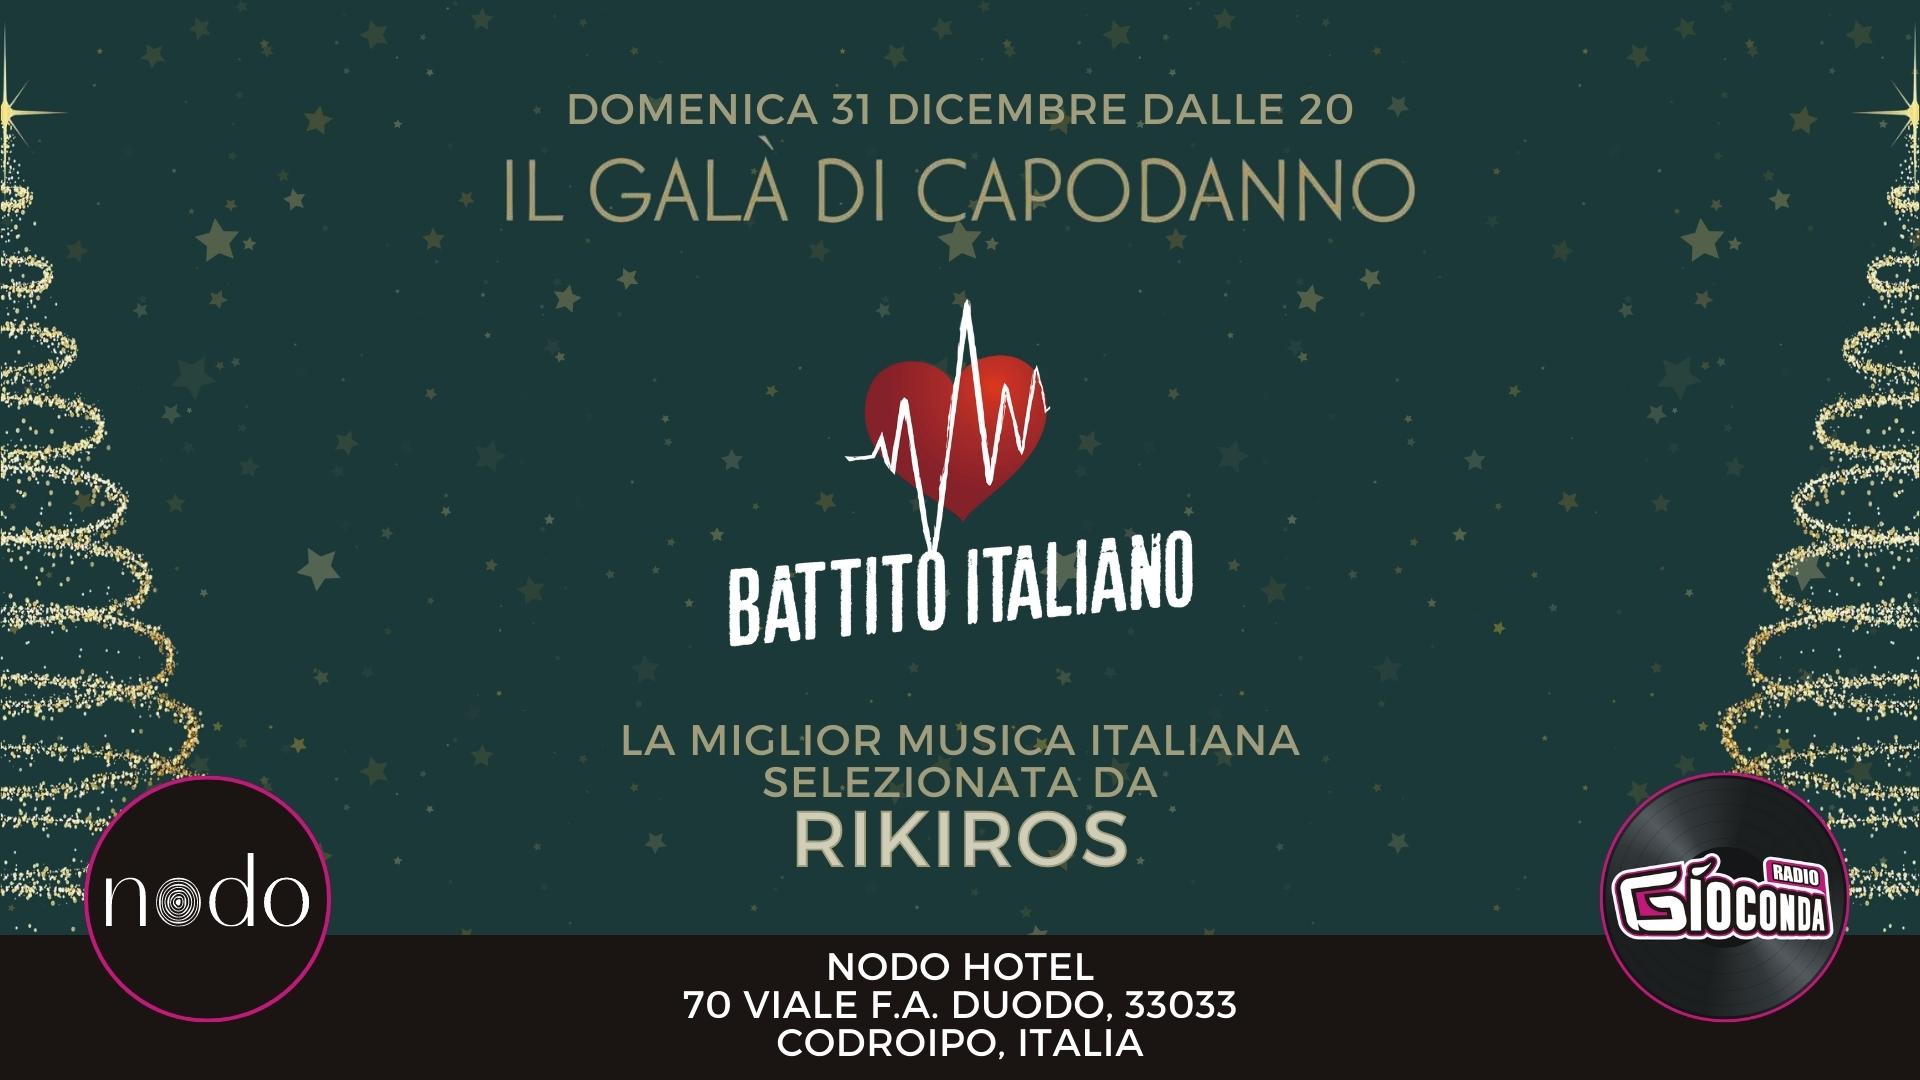 Battito Italiano Live, Il Galà di Capodanno al Nodo Hotel & Spa